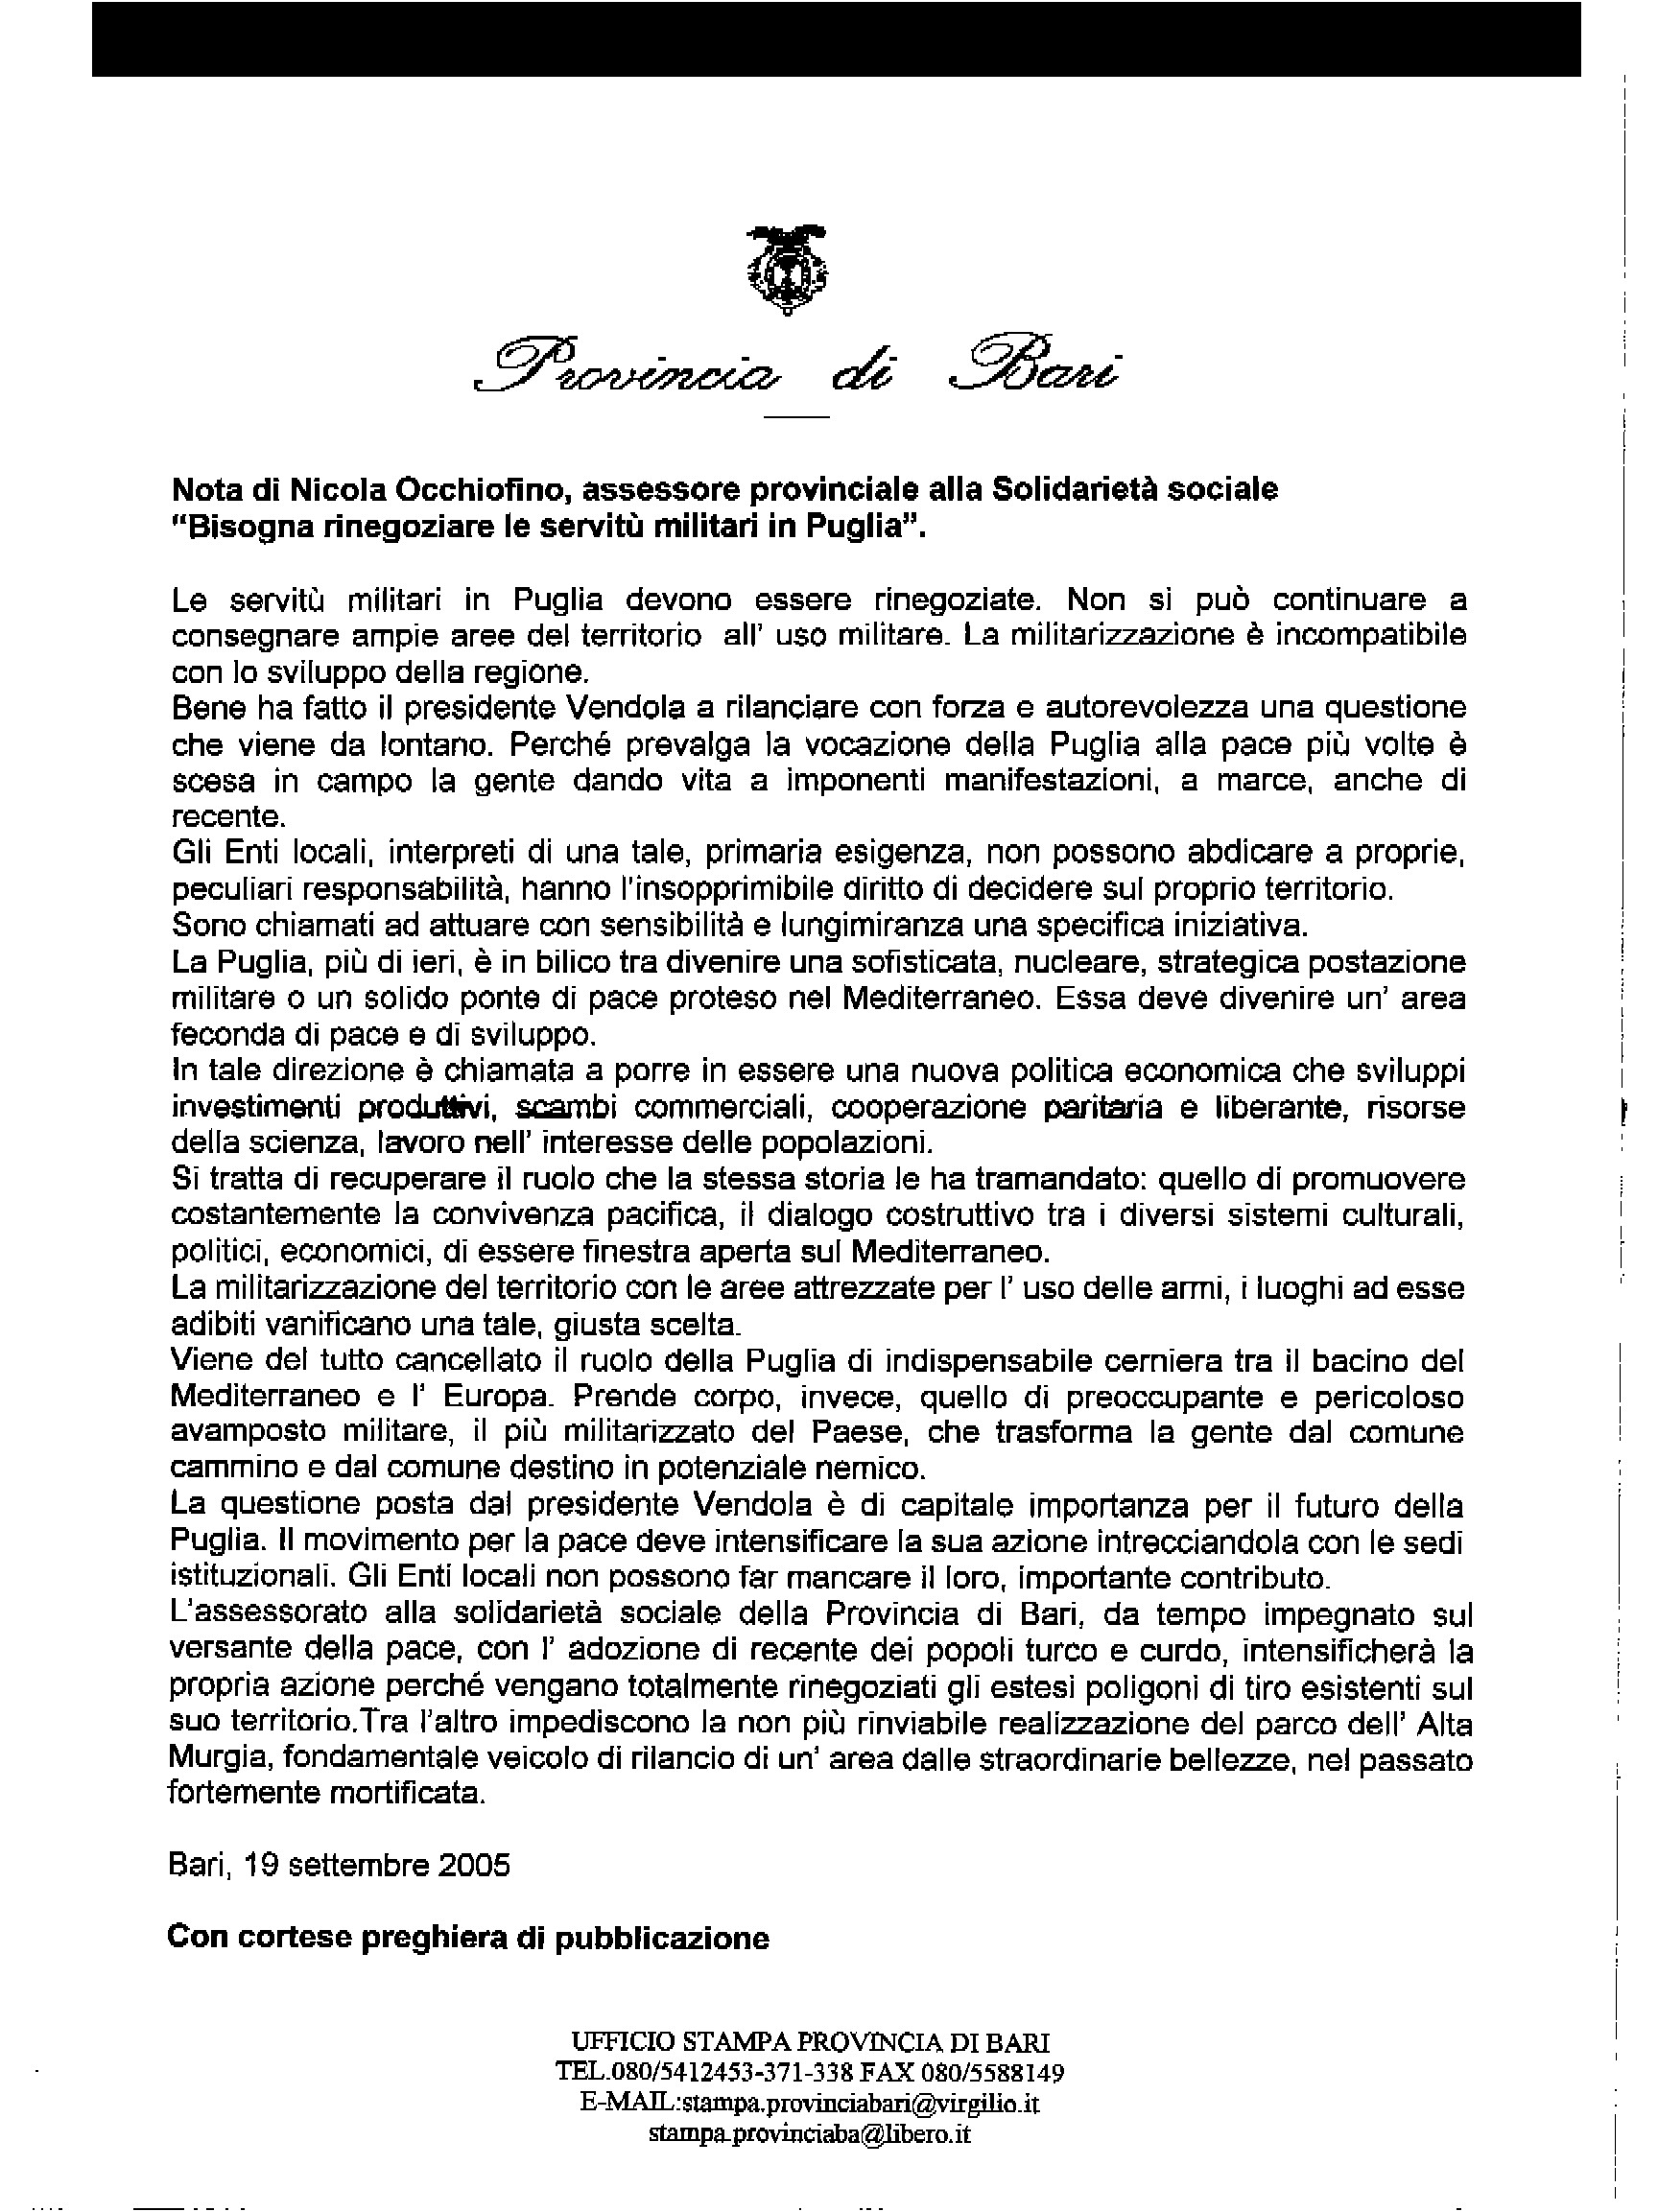 Fax di Nicola Occhiofino, Assessore alla solidarietà sociale della Provincia di Bari